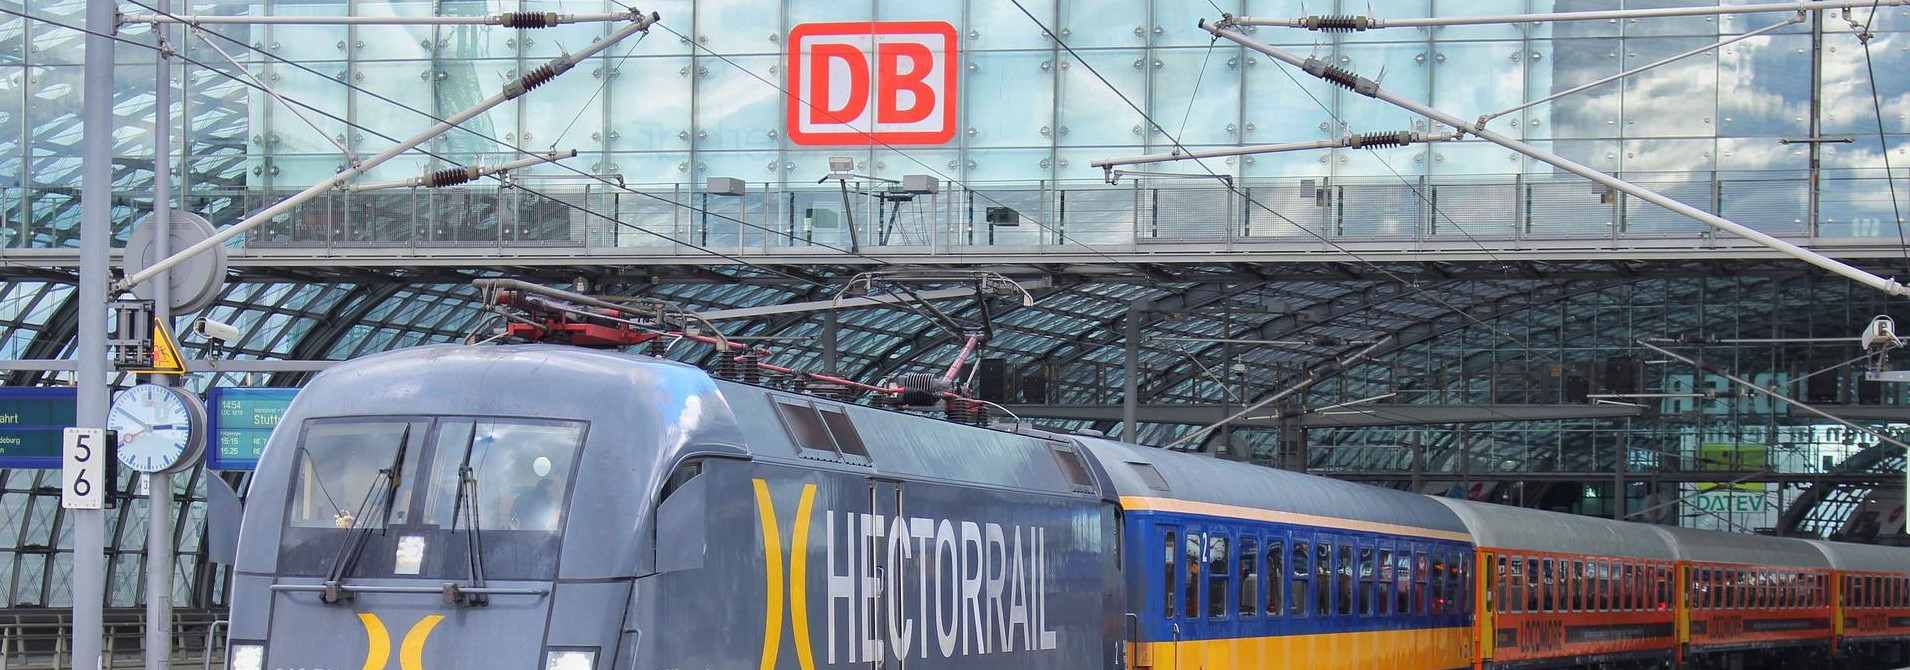 Firmenname der Deutschen Bahn